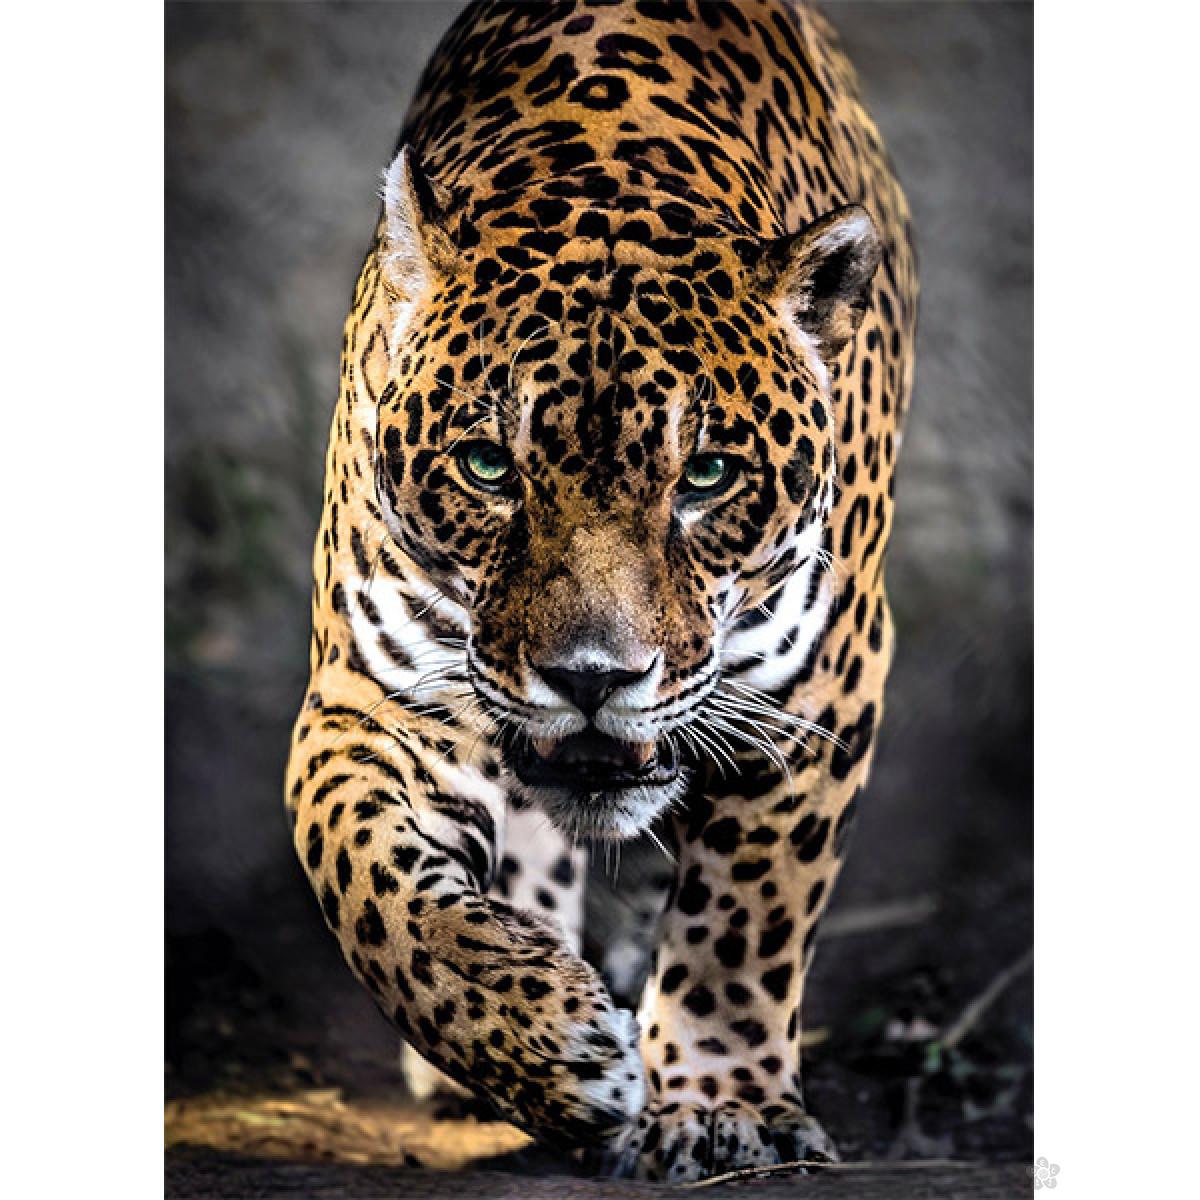 Puzzla Walk on the jaguar 1000 delova Clementoni, 39326 